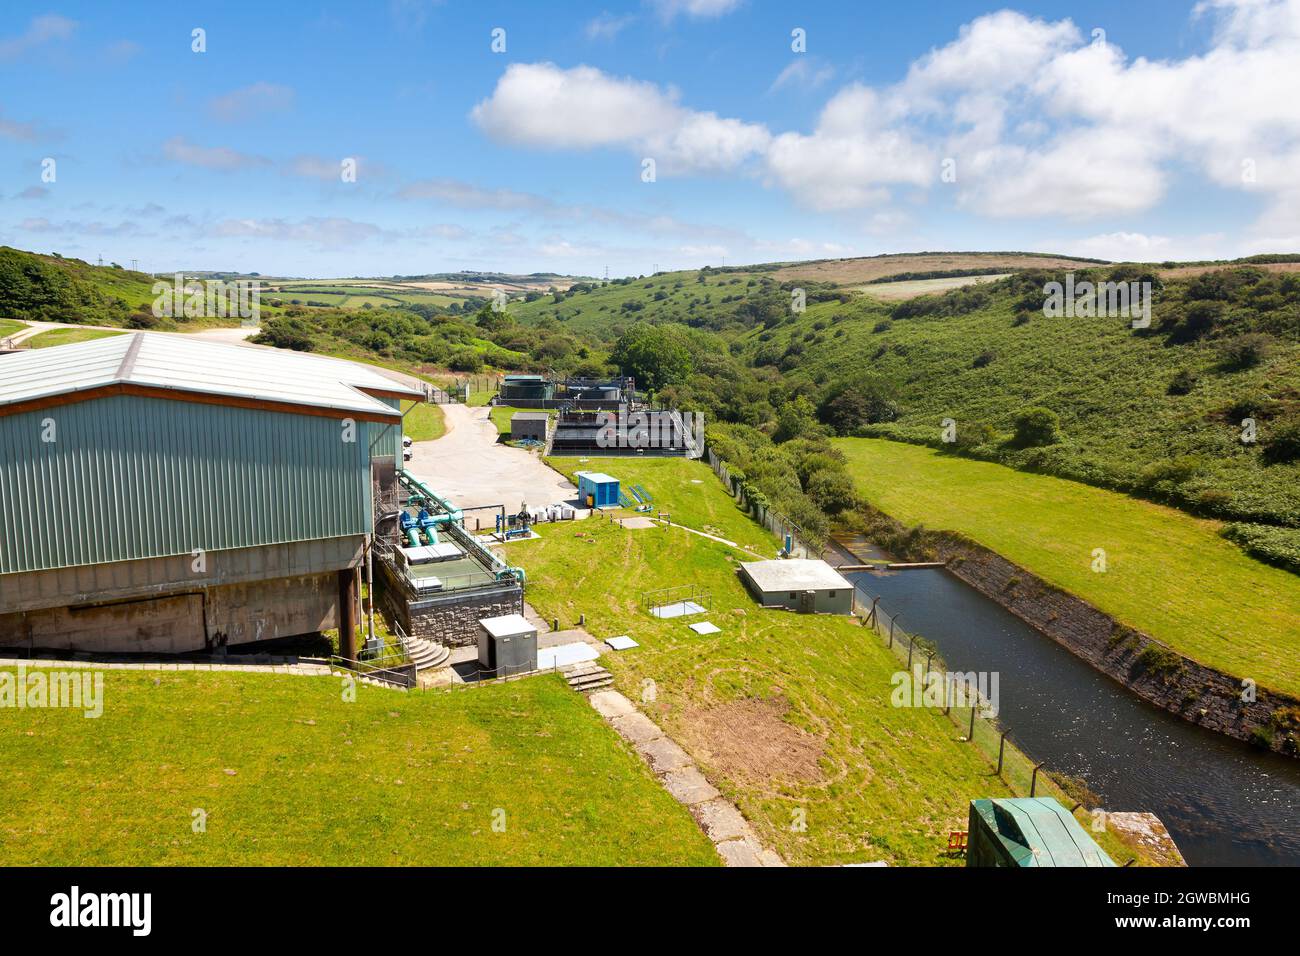 Installations de traitement de l'eau potable au réservoir Stithians Cornwall Angleterre Royaume-Uni Europe Banque D'Images